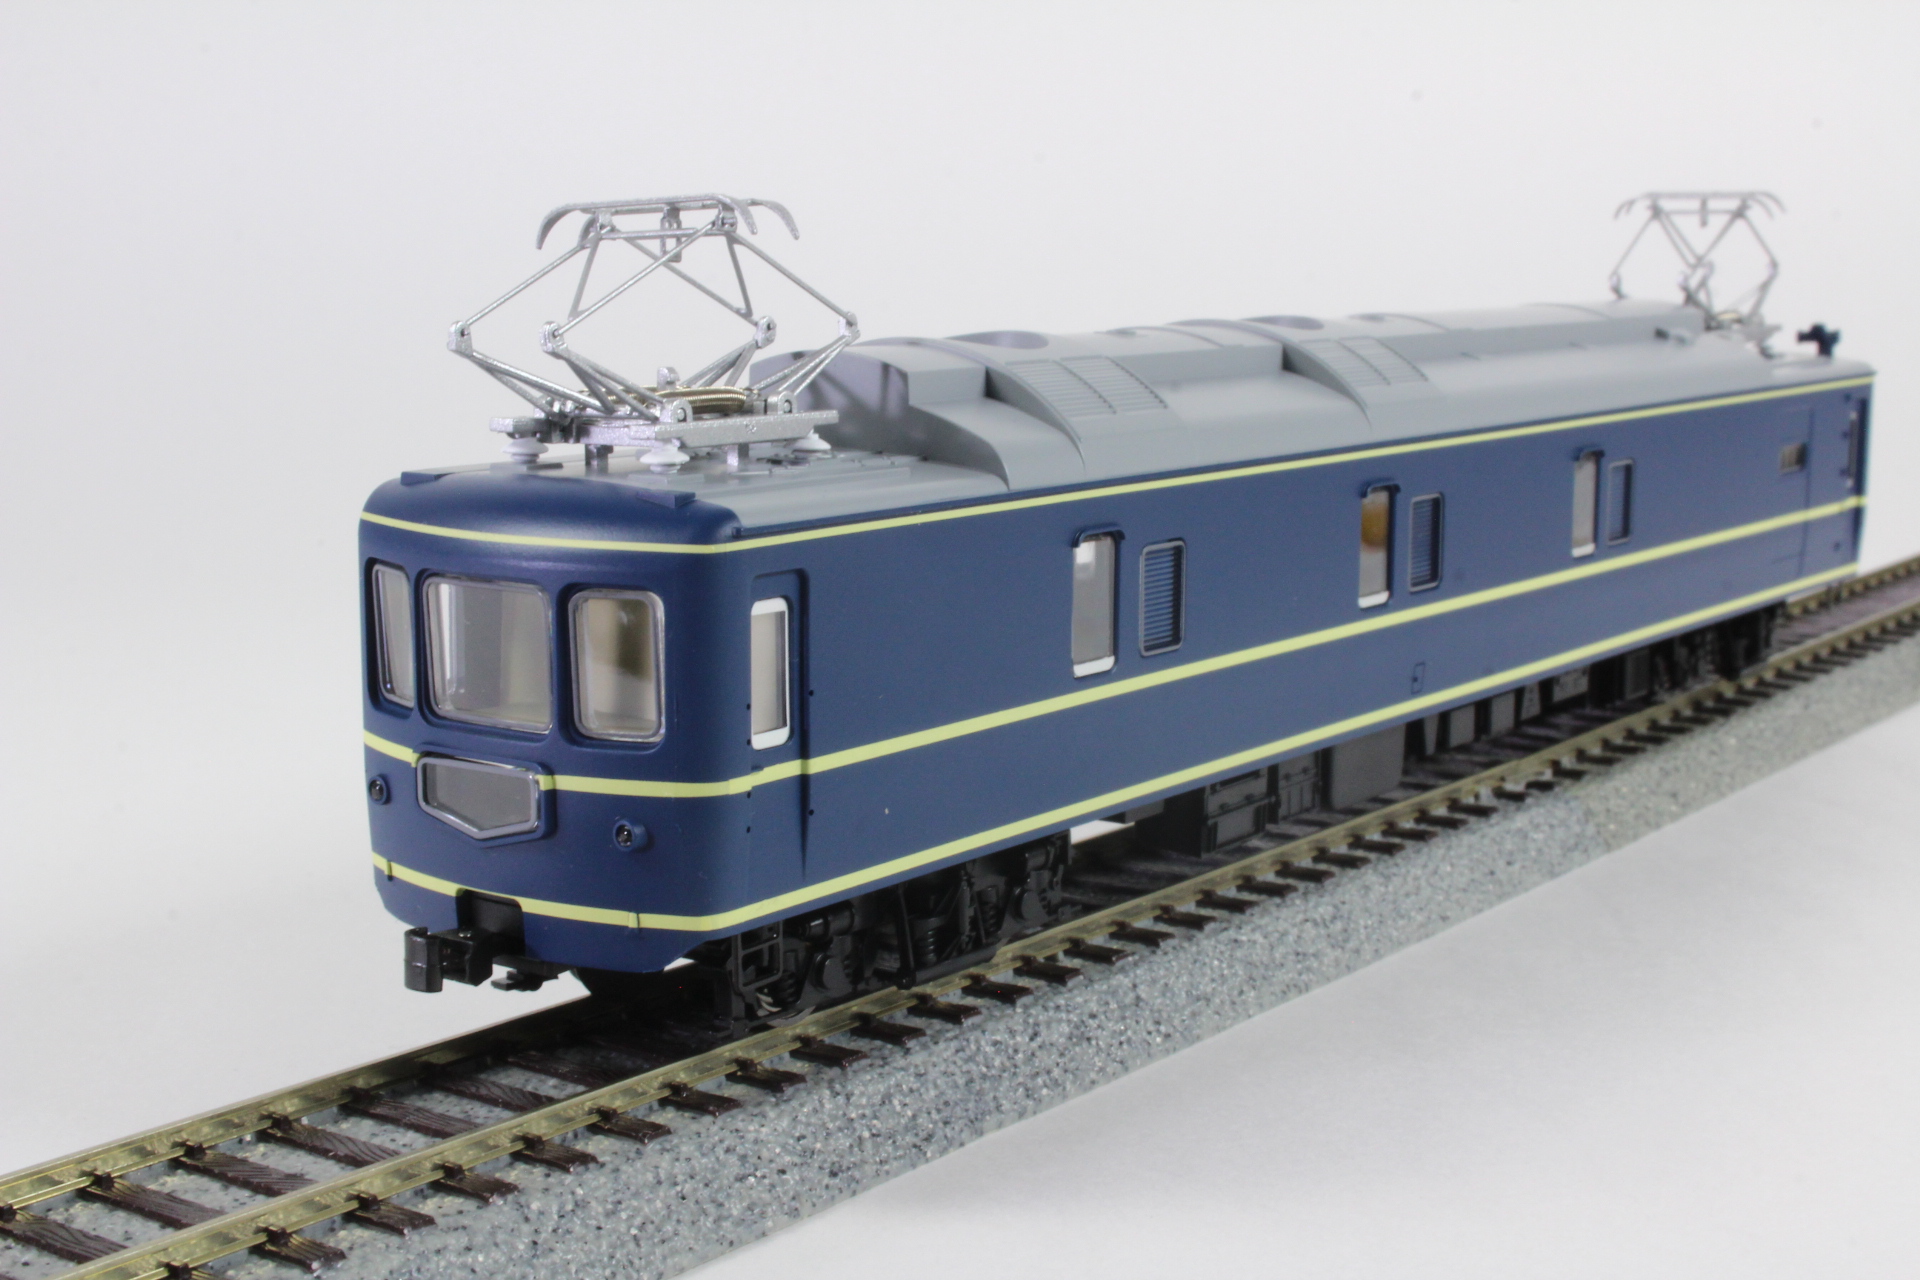 【海外限定】トラムウェイ TW20-009 カニ22 国鉄20系客車 HOゲージ 鉄道模型 中古 N6559672 JR、国鉄車輌